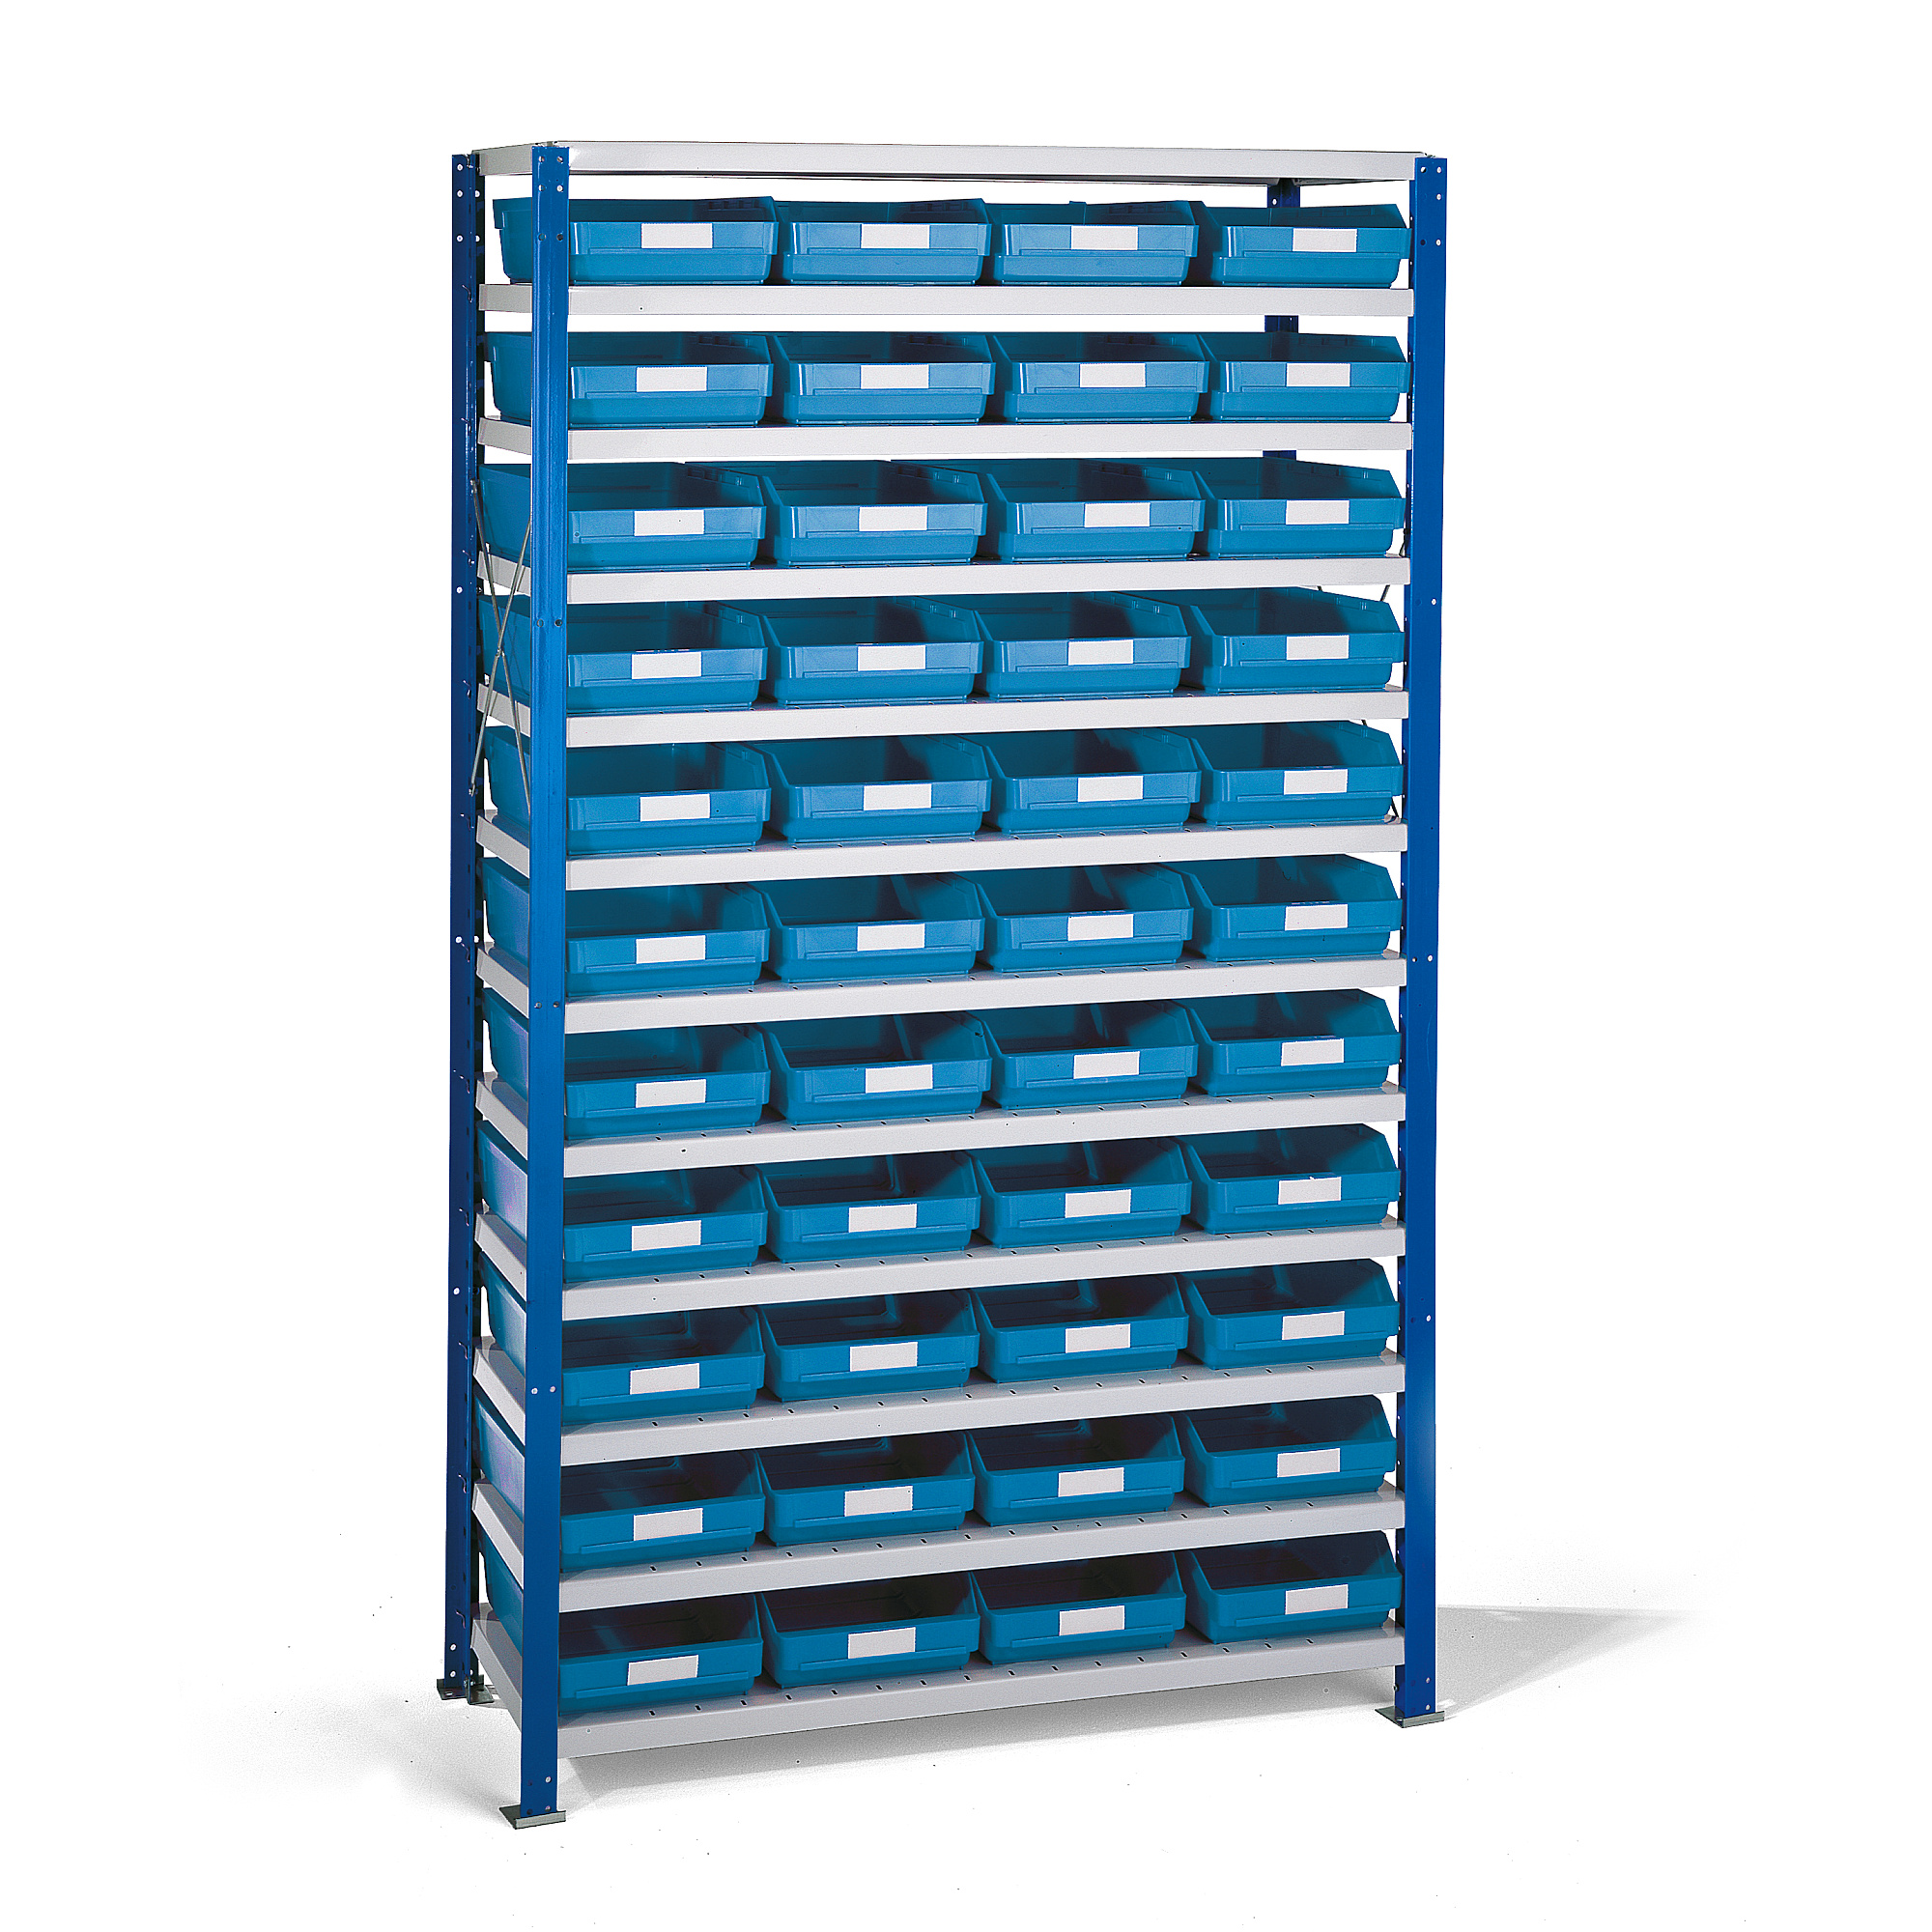 Regál s plastovými boxy REACH + MIX, 1740x1000x400 mm, 44 modrých boxů